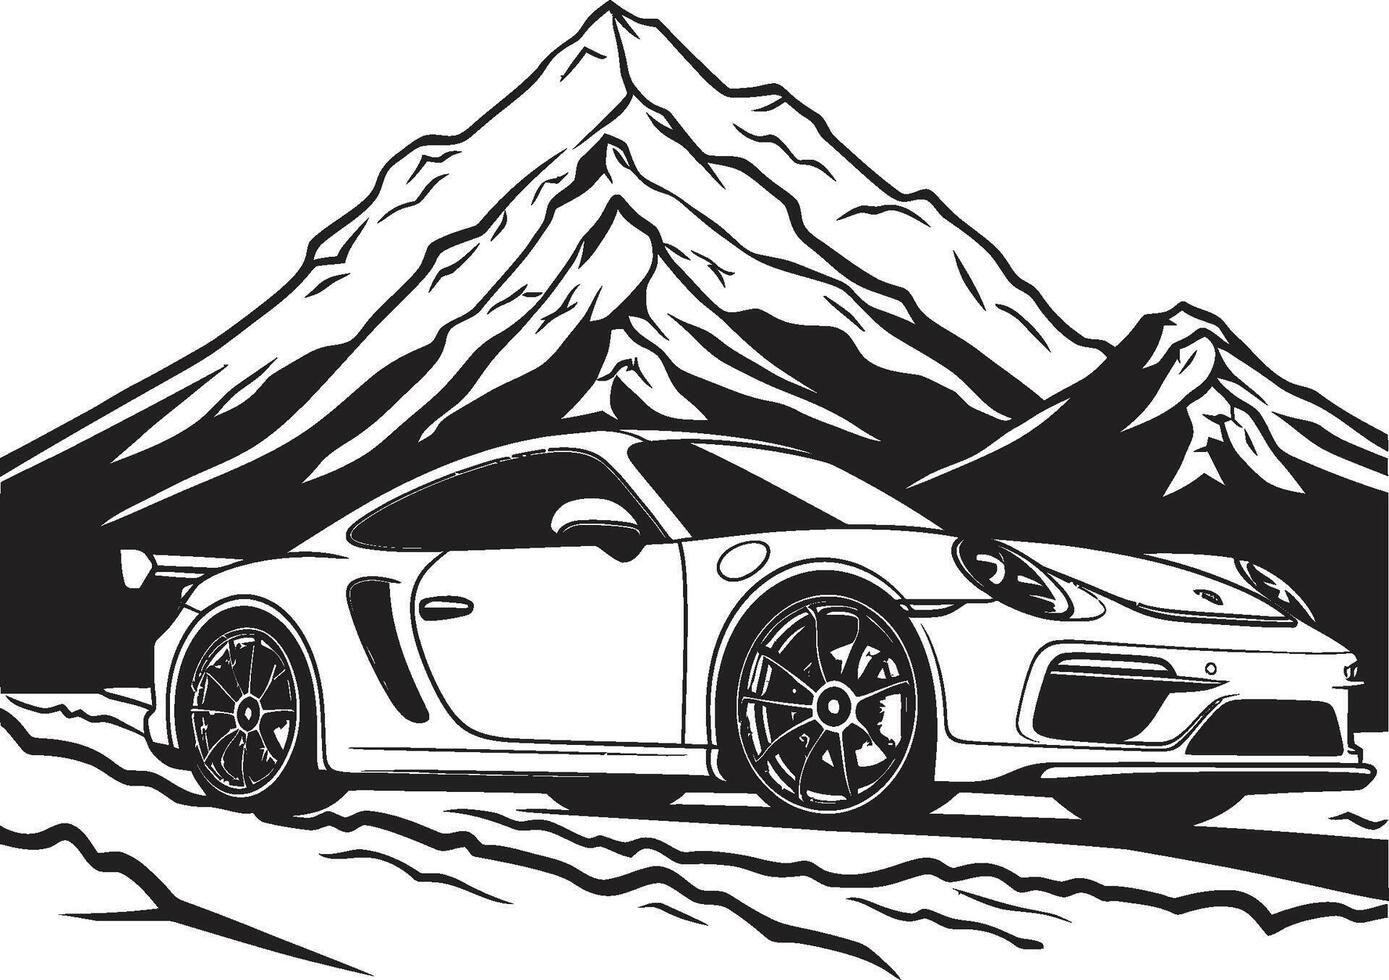 topp superbil vektor ikon symboliserar en svart logotyp design på berg vägar höjd över havet acceleration dynamisk svart symbol med en sporter bil på berg vägar